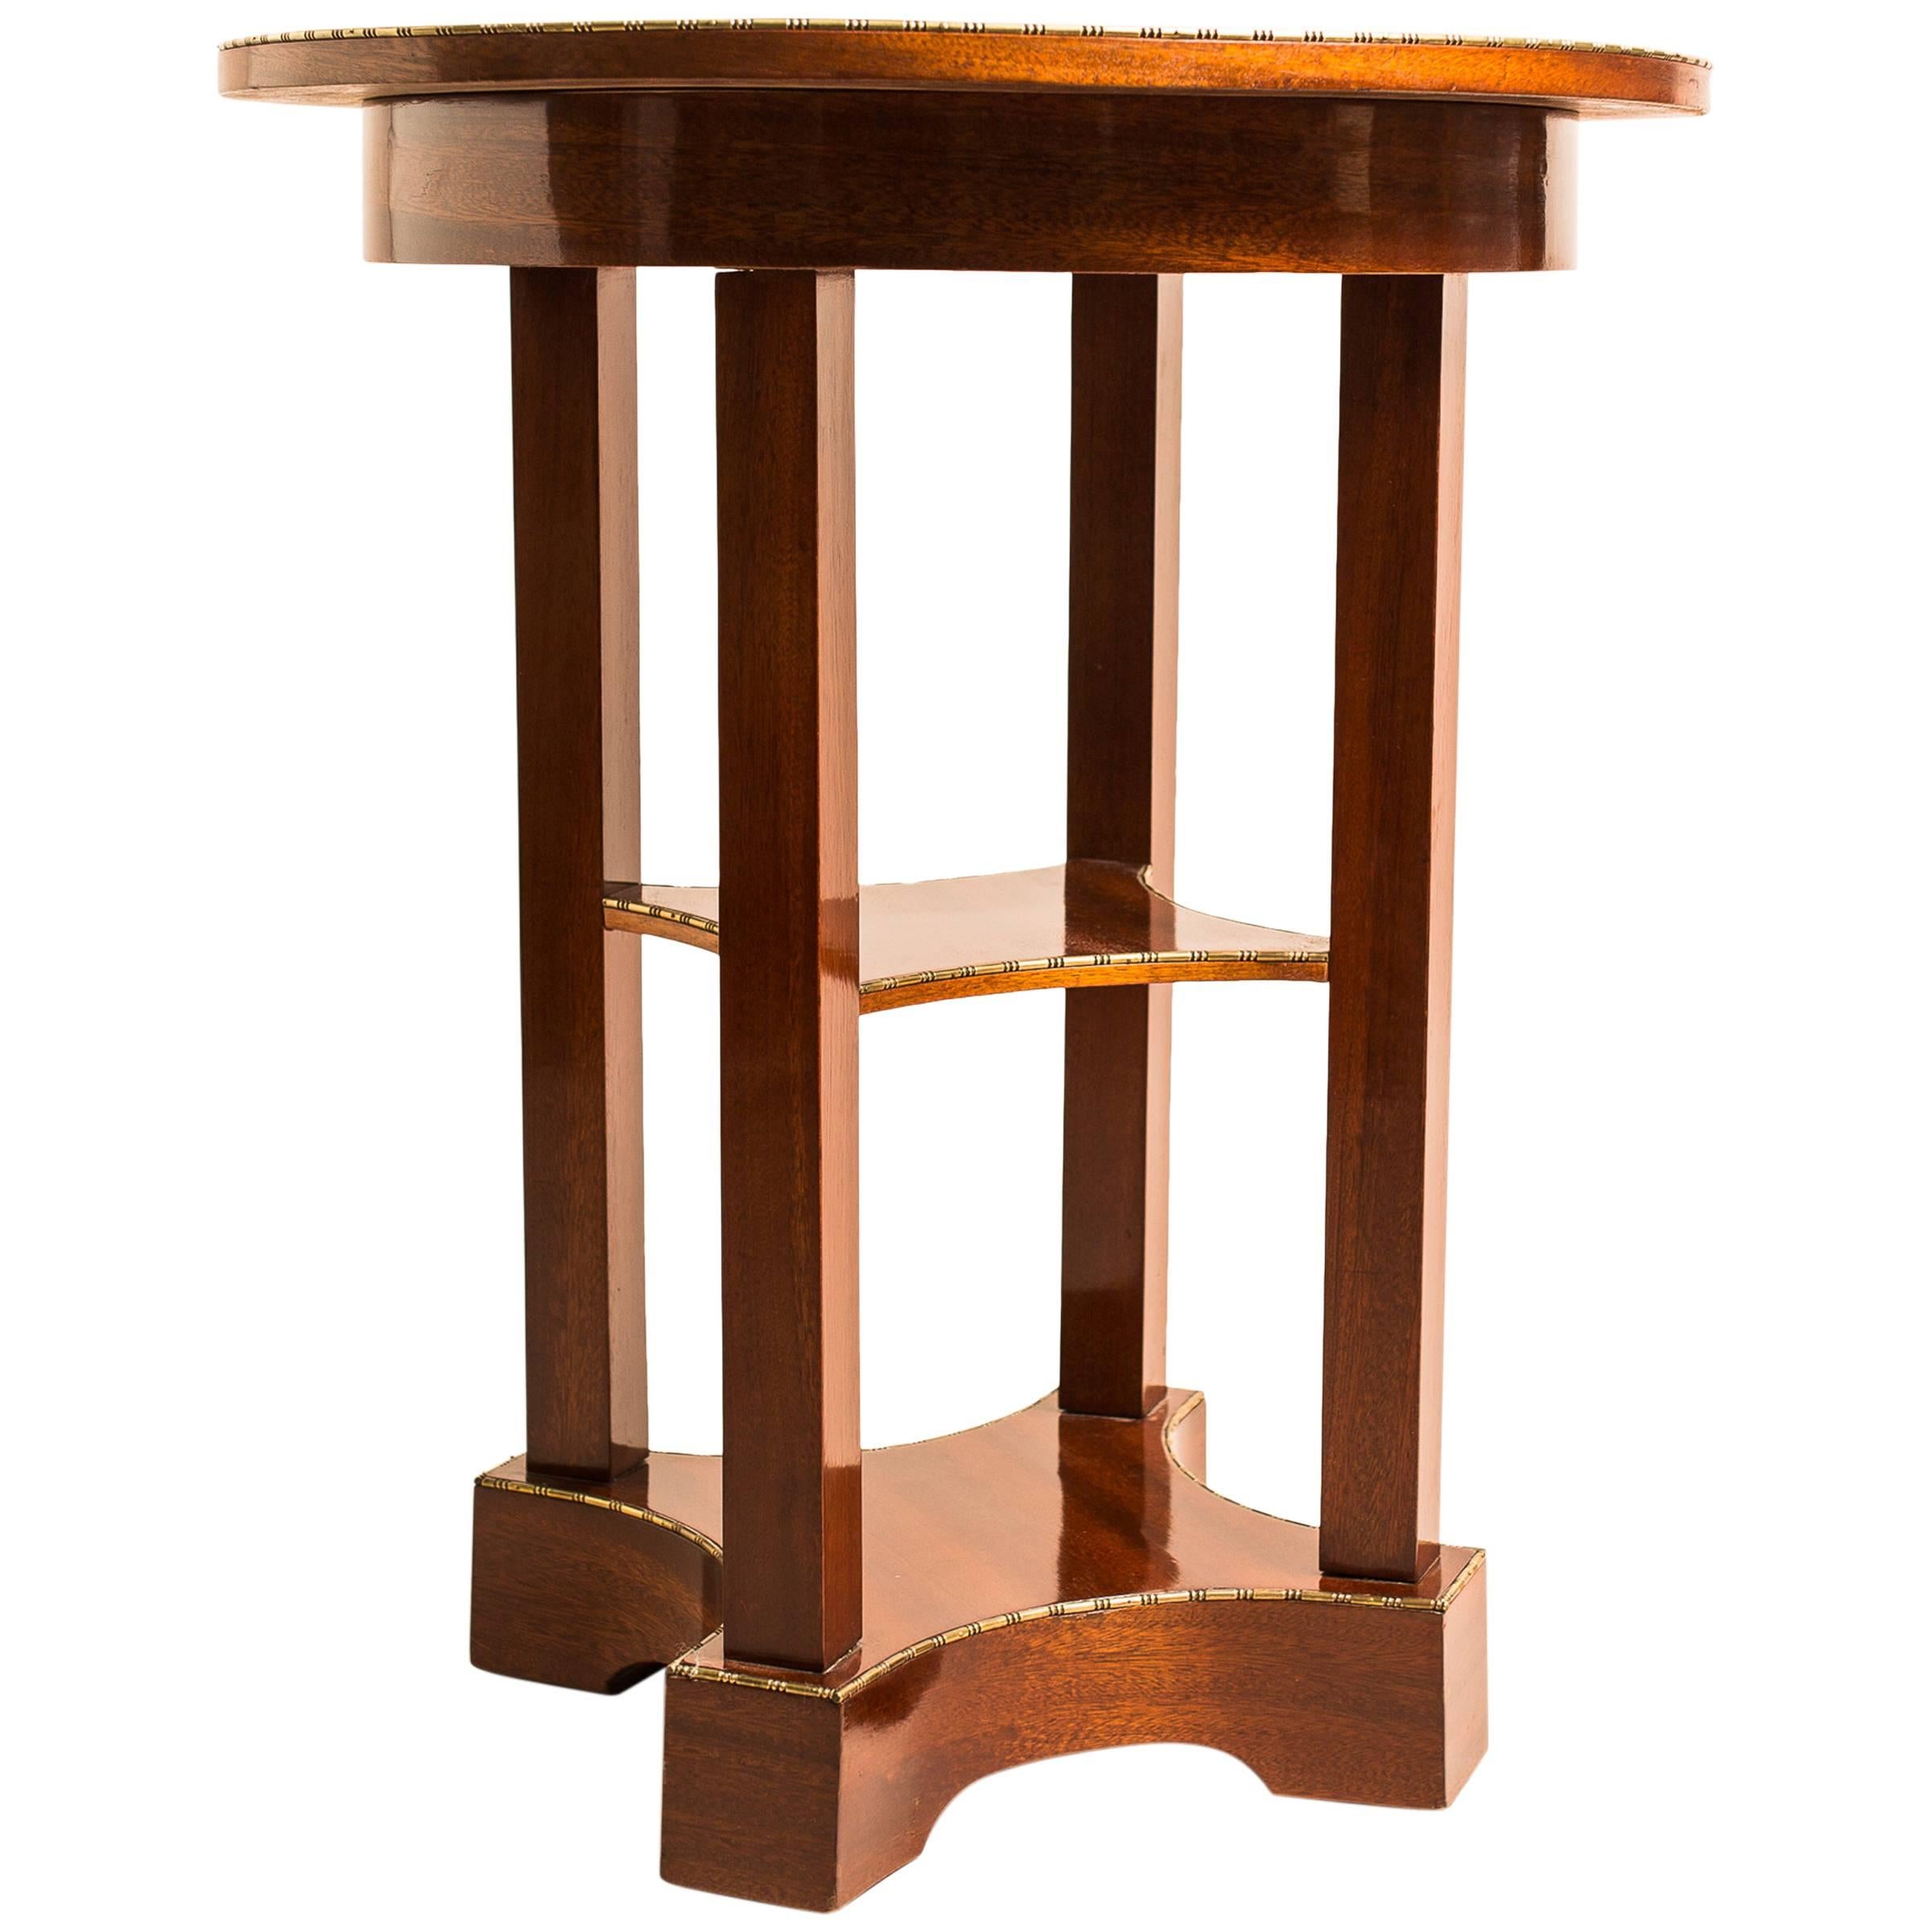 Sehr gefälliger runder österreichischer Mahagoni-Beistelltisch aus dem frühen 20. Jahrhundert, um 1910. Ein wertvolles Wiener Möbelstück, gefertigt aus feinstem Mahagoni-Furnier. Die runde Deckplatte ruht auf vier quadratischen Säulen, die auf einem